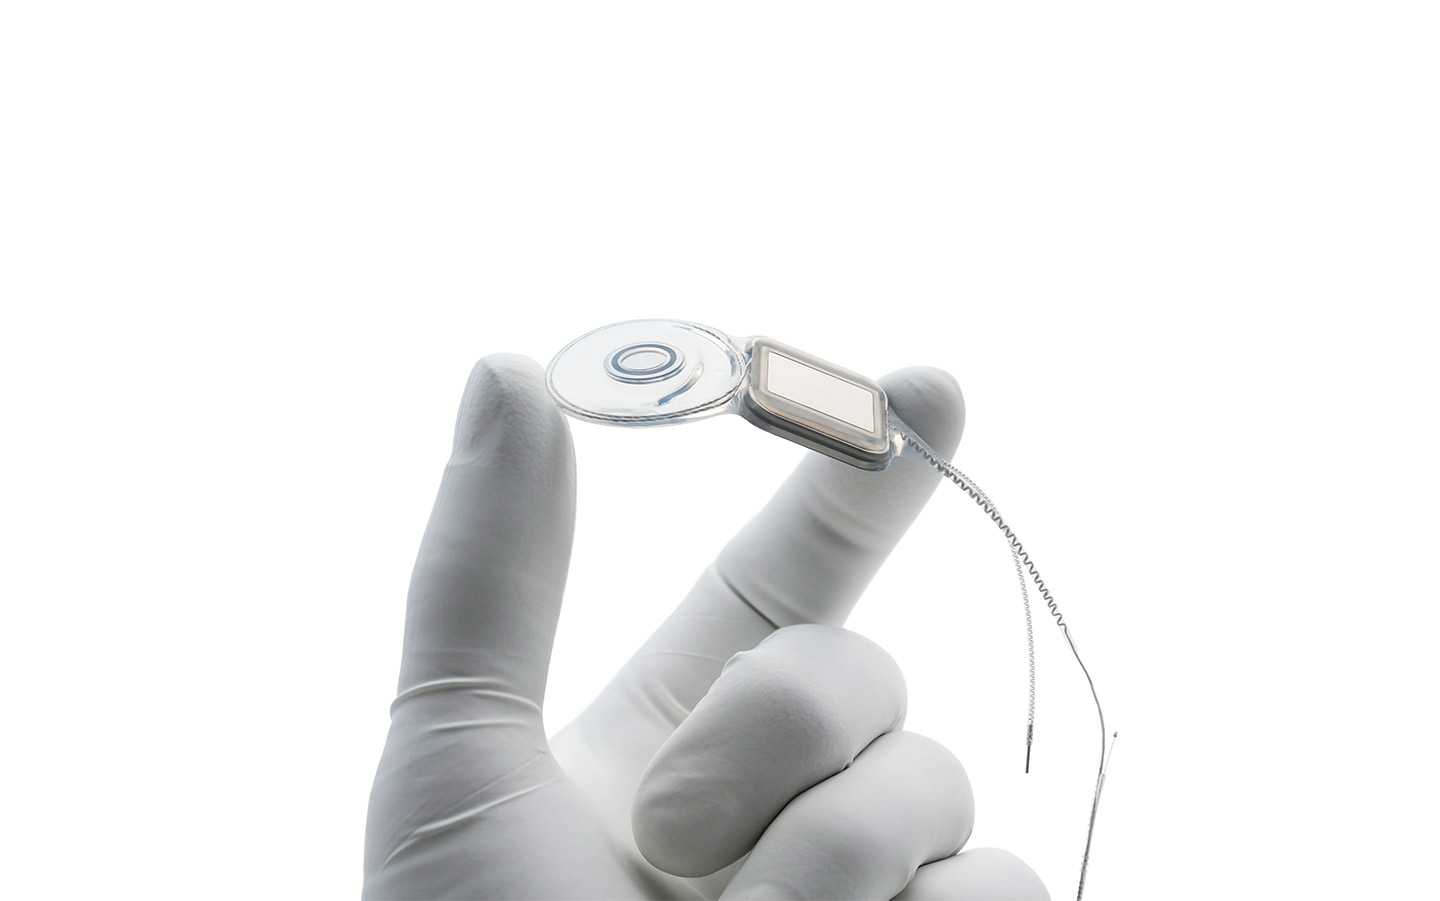 Mano de un cirujano con un guante de látex sosteniendo un implante Nucleus